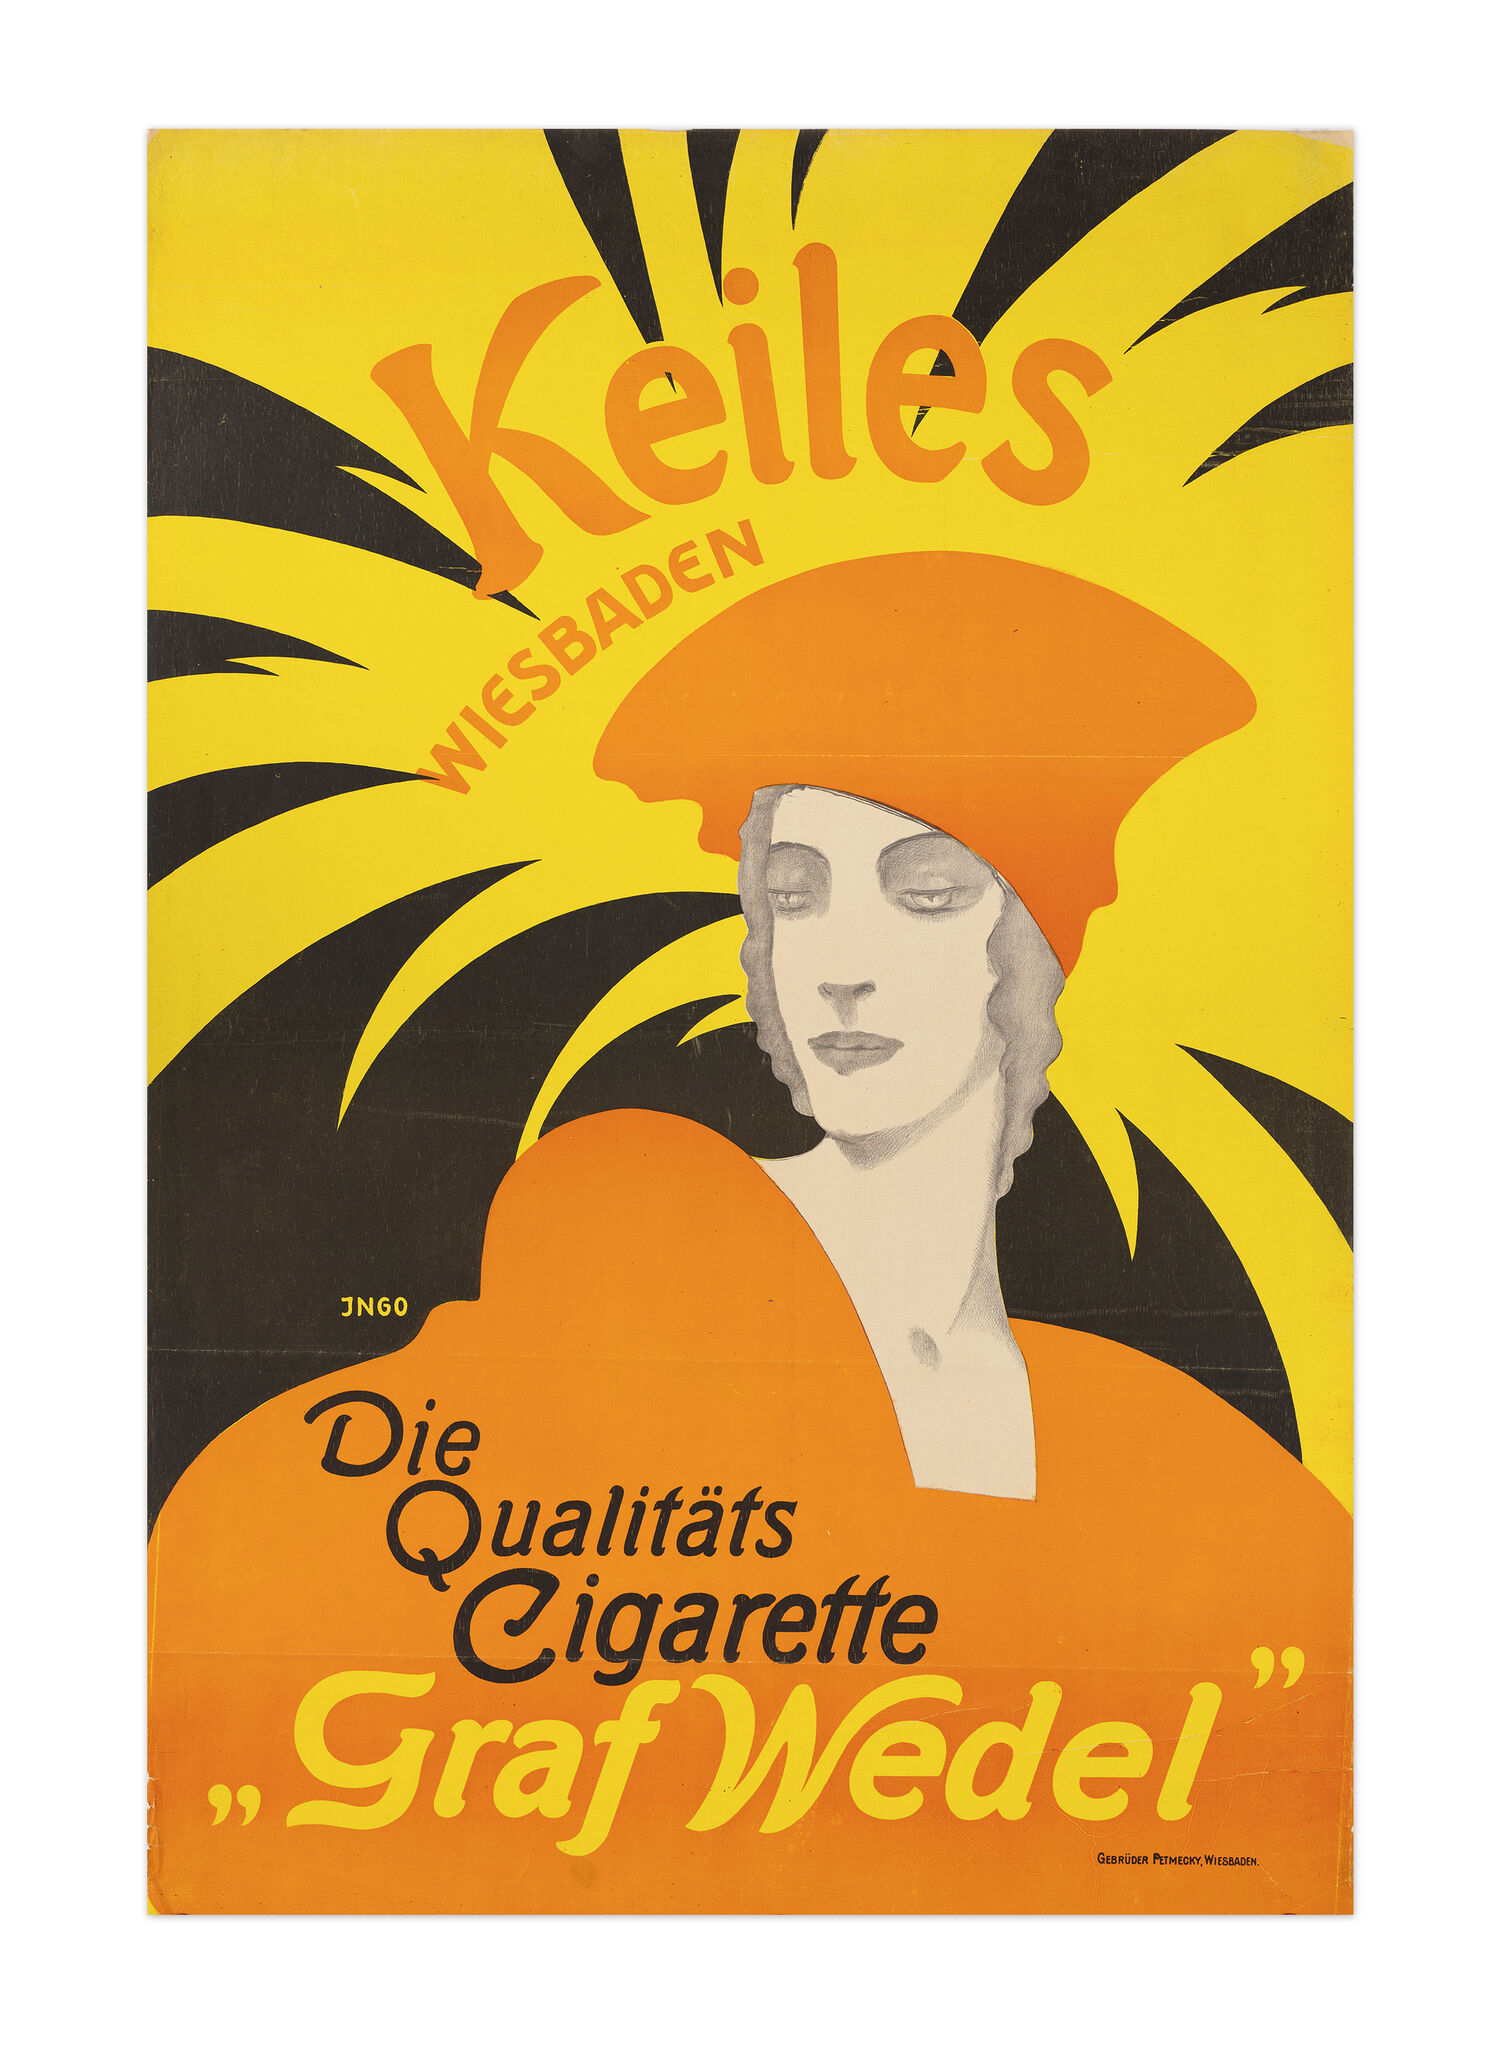 Anonym, Keiles Cigarette „Graf Wedel“, um 1920, Farblithografie, Druck: Gebrüder Petmecky, Wiesbaden, Plakatsammlung Maximilian Karagöz. Foto: Museum Wiesbaden/Bernd Fickert